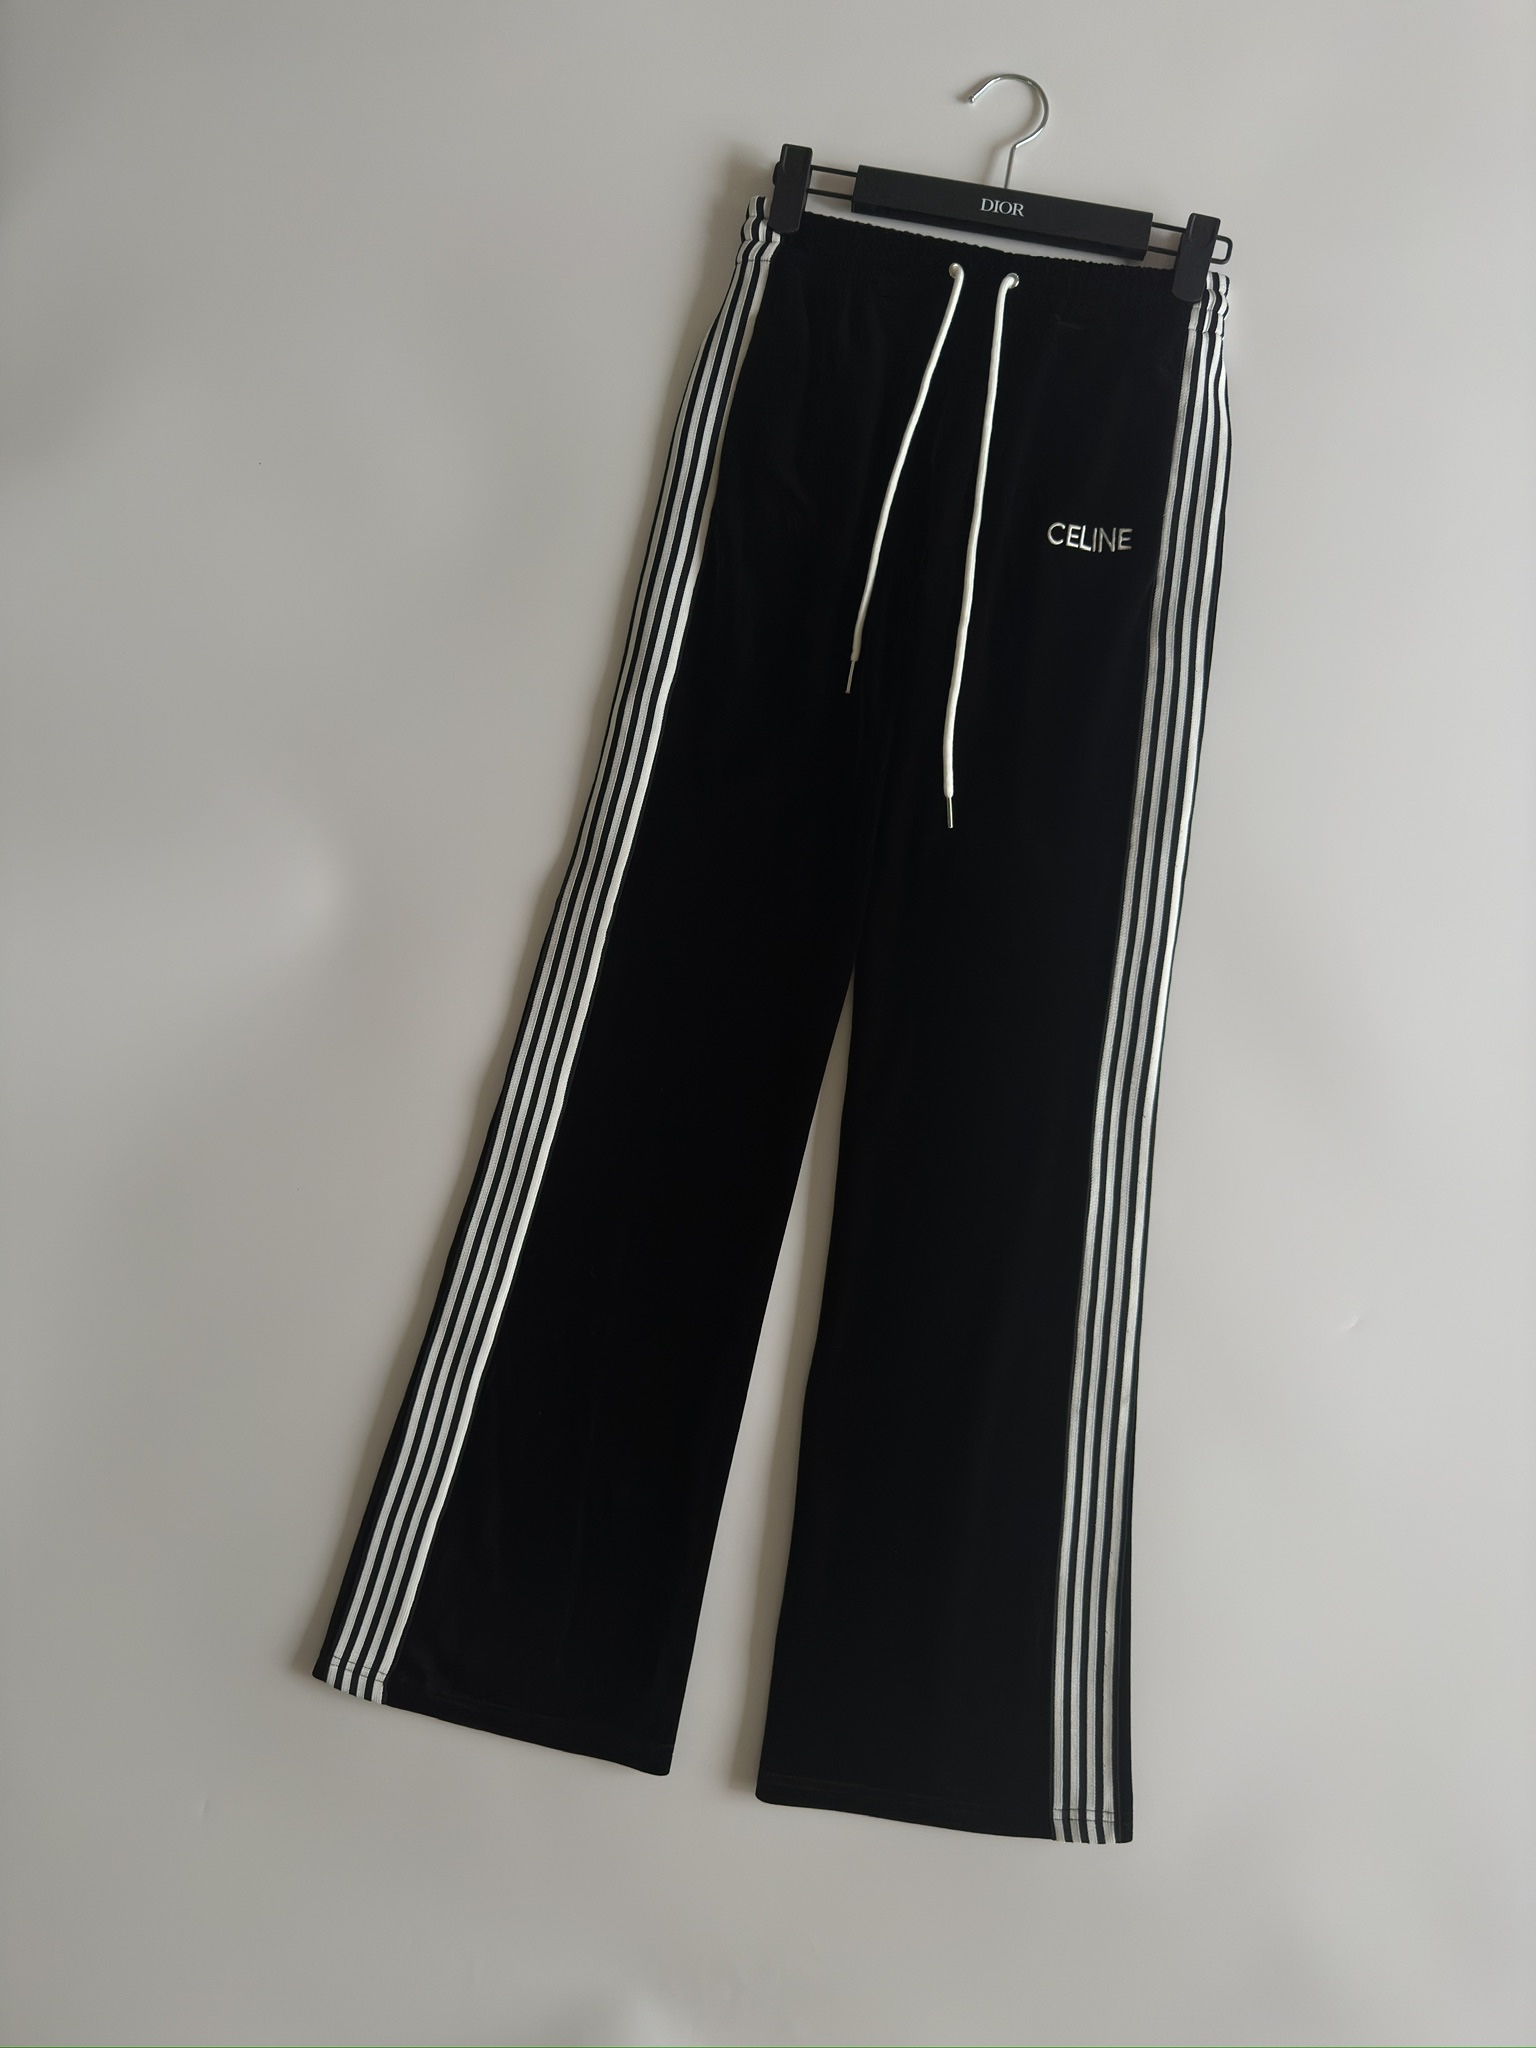 セリーヌ ズボン メンズ偽物 ズボン カジュアルパンツ 高級感 ラッパ形 厚い シンプル 人気品 ブラック_2